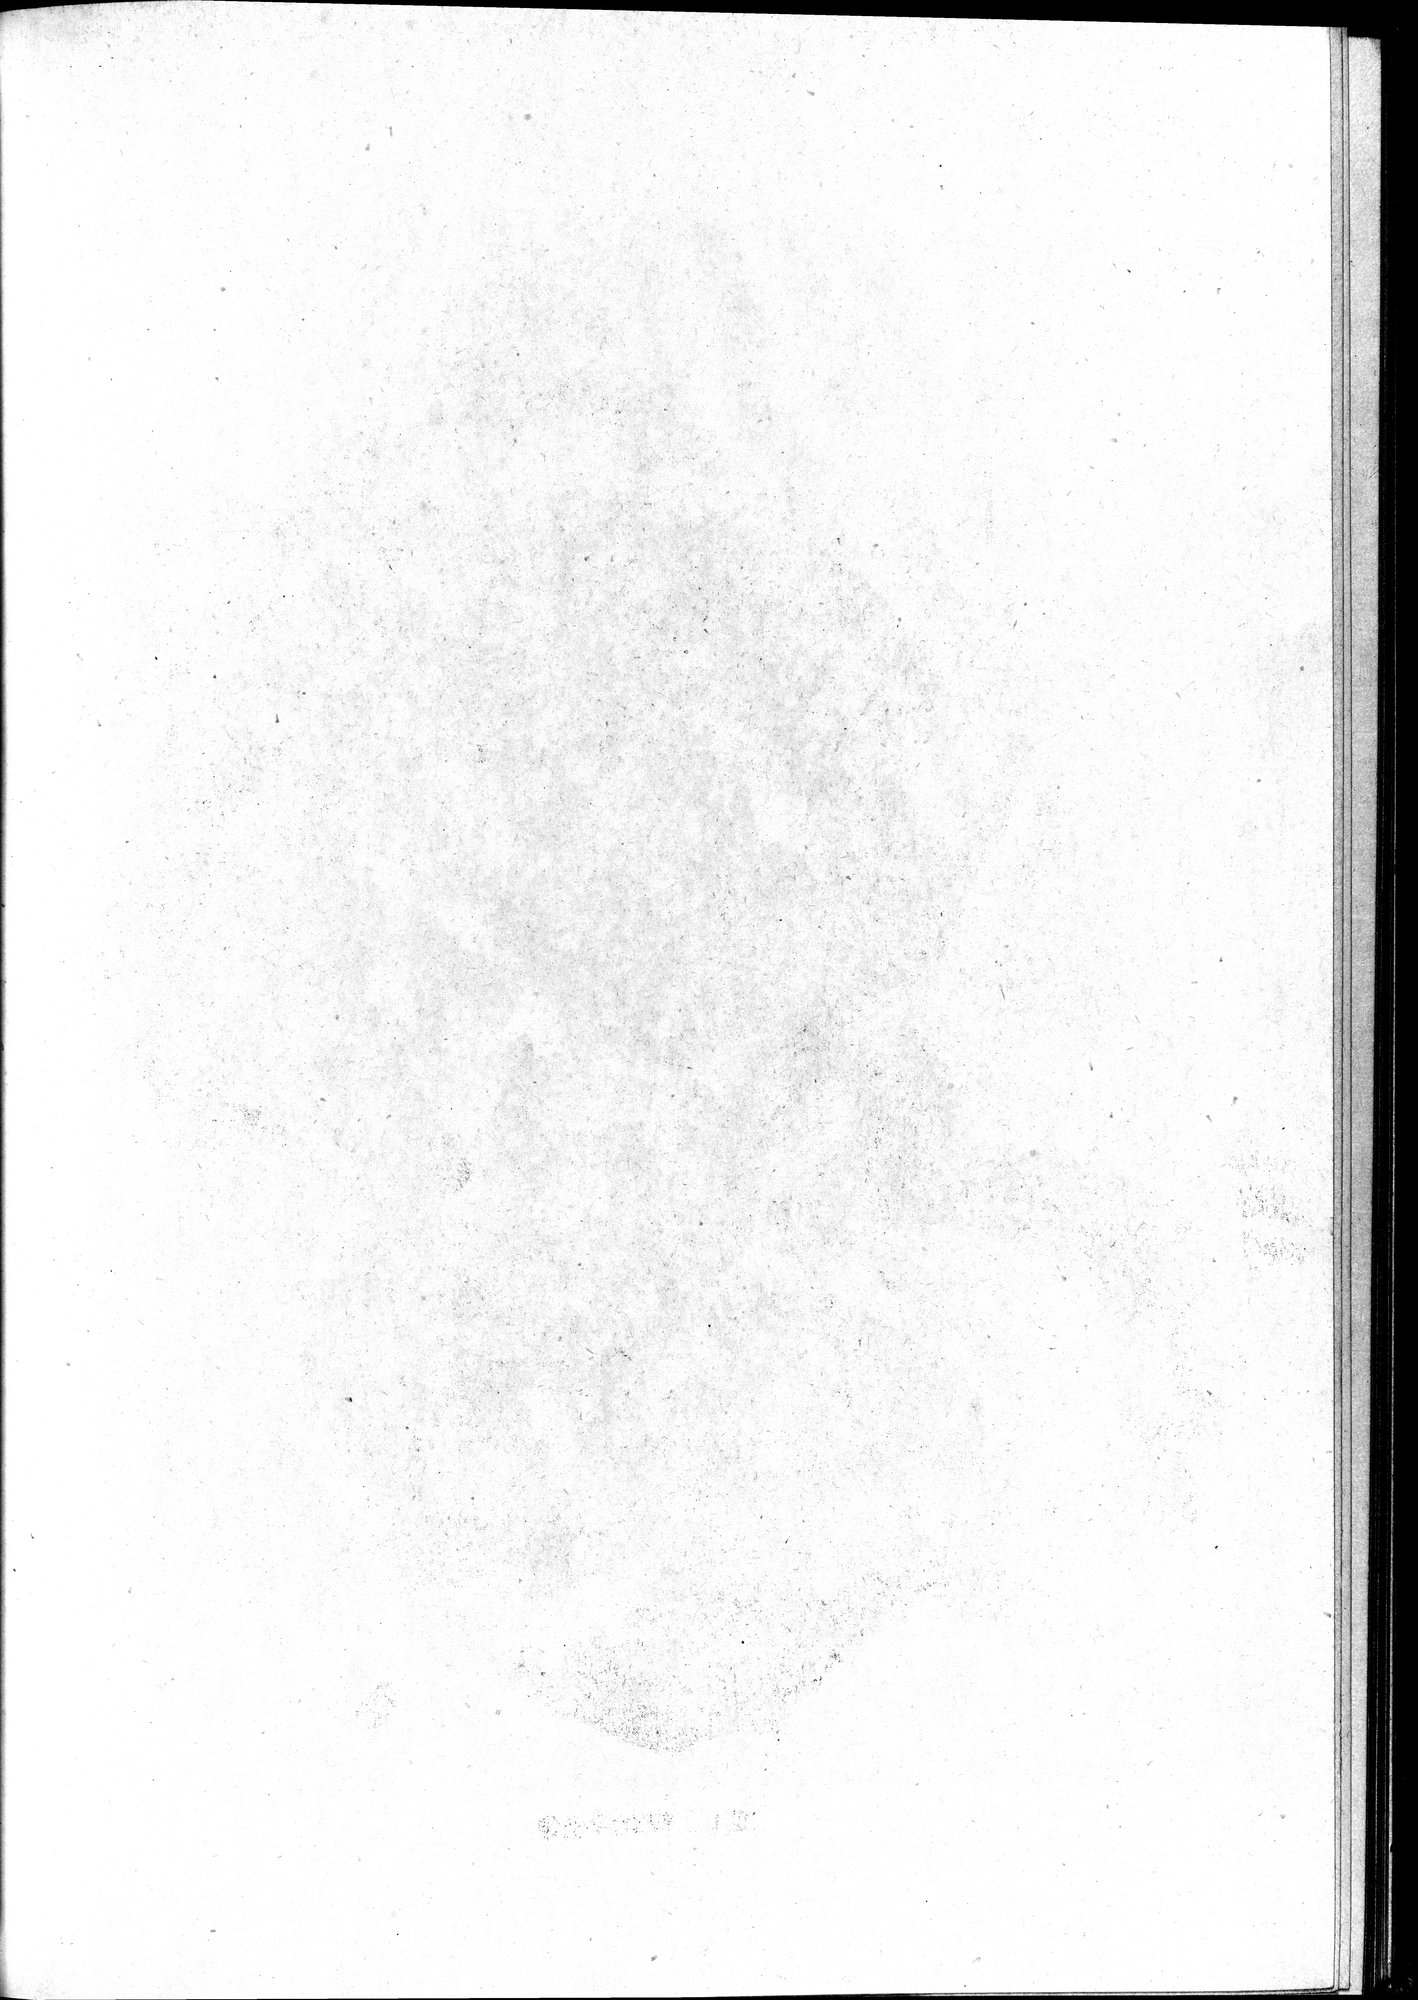 塔里木盆地考古記 : vol.1 / Page 210 (Grayscale High Resolution Image)